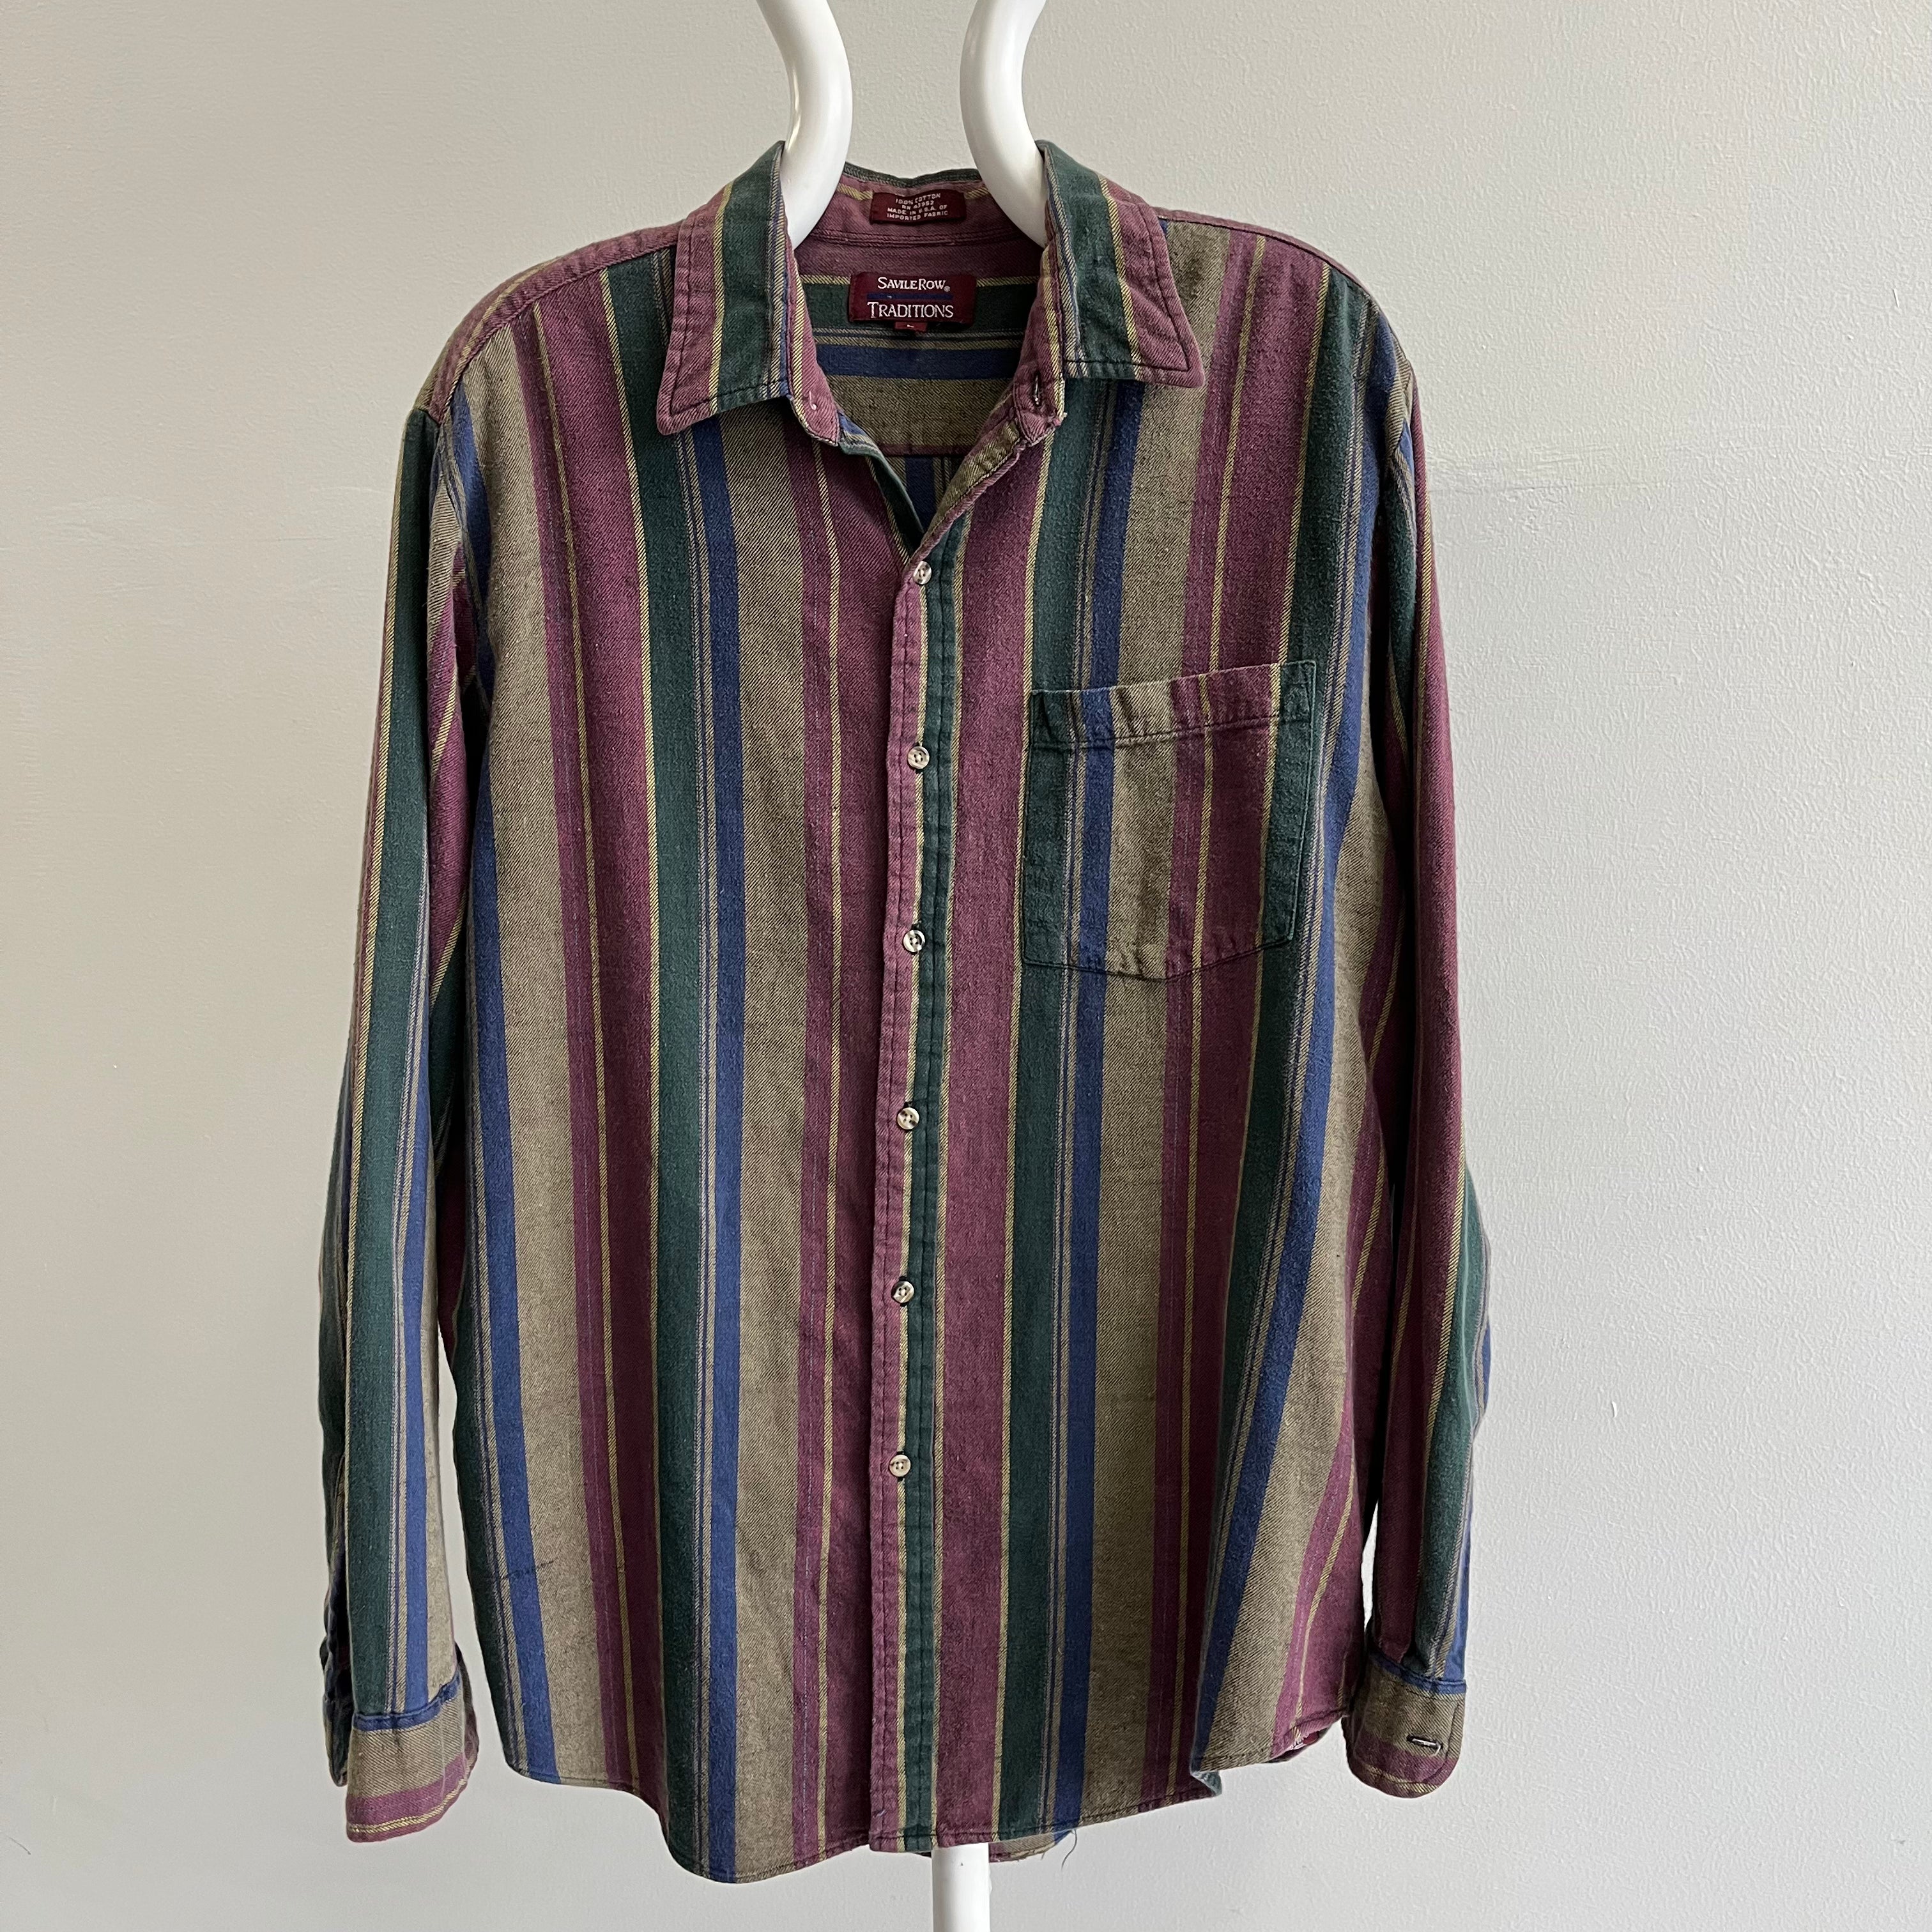 Flanelle/chemise en coton extra doux léger des années 1990